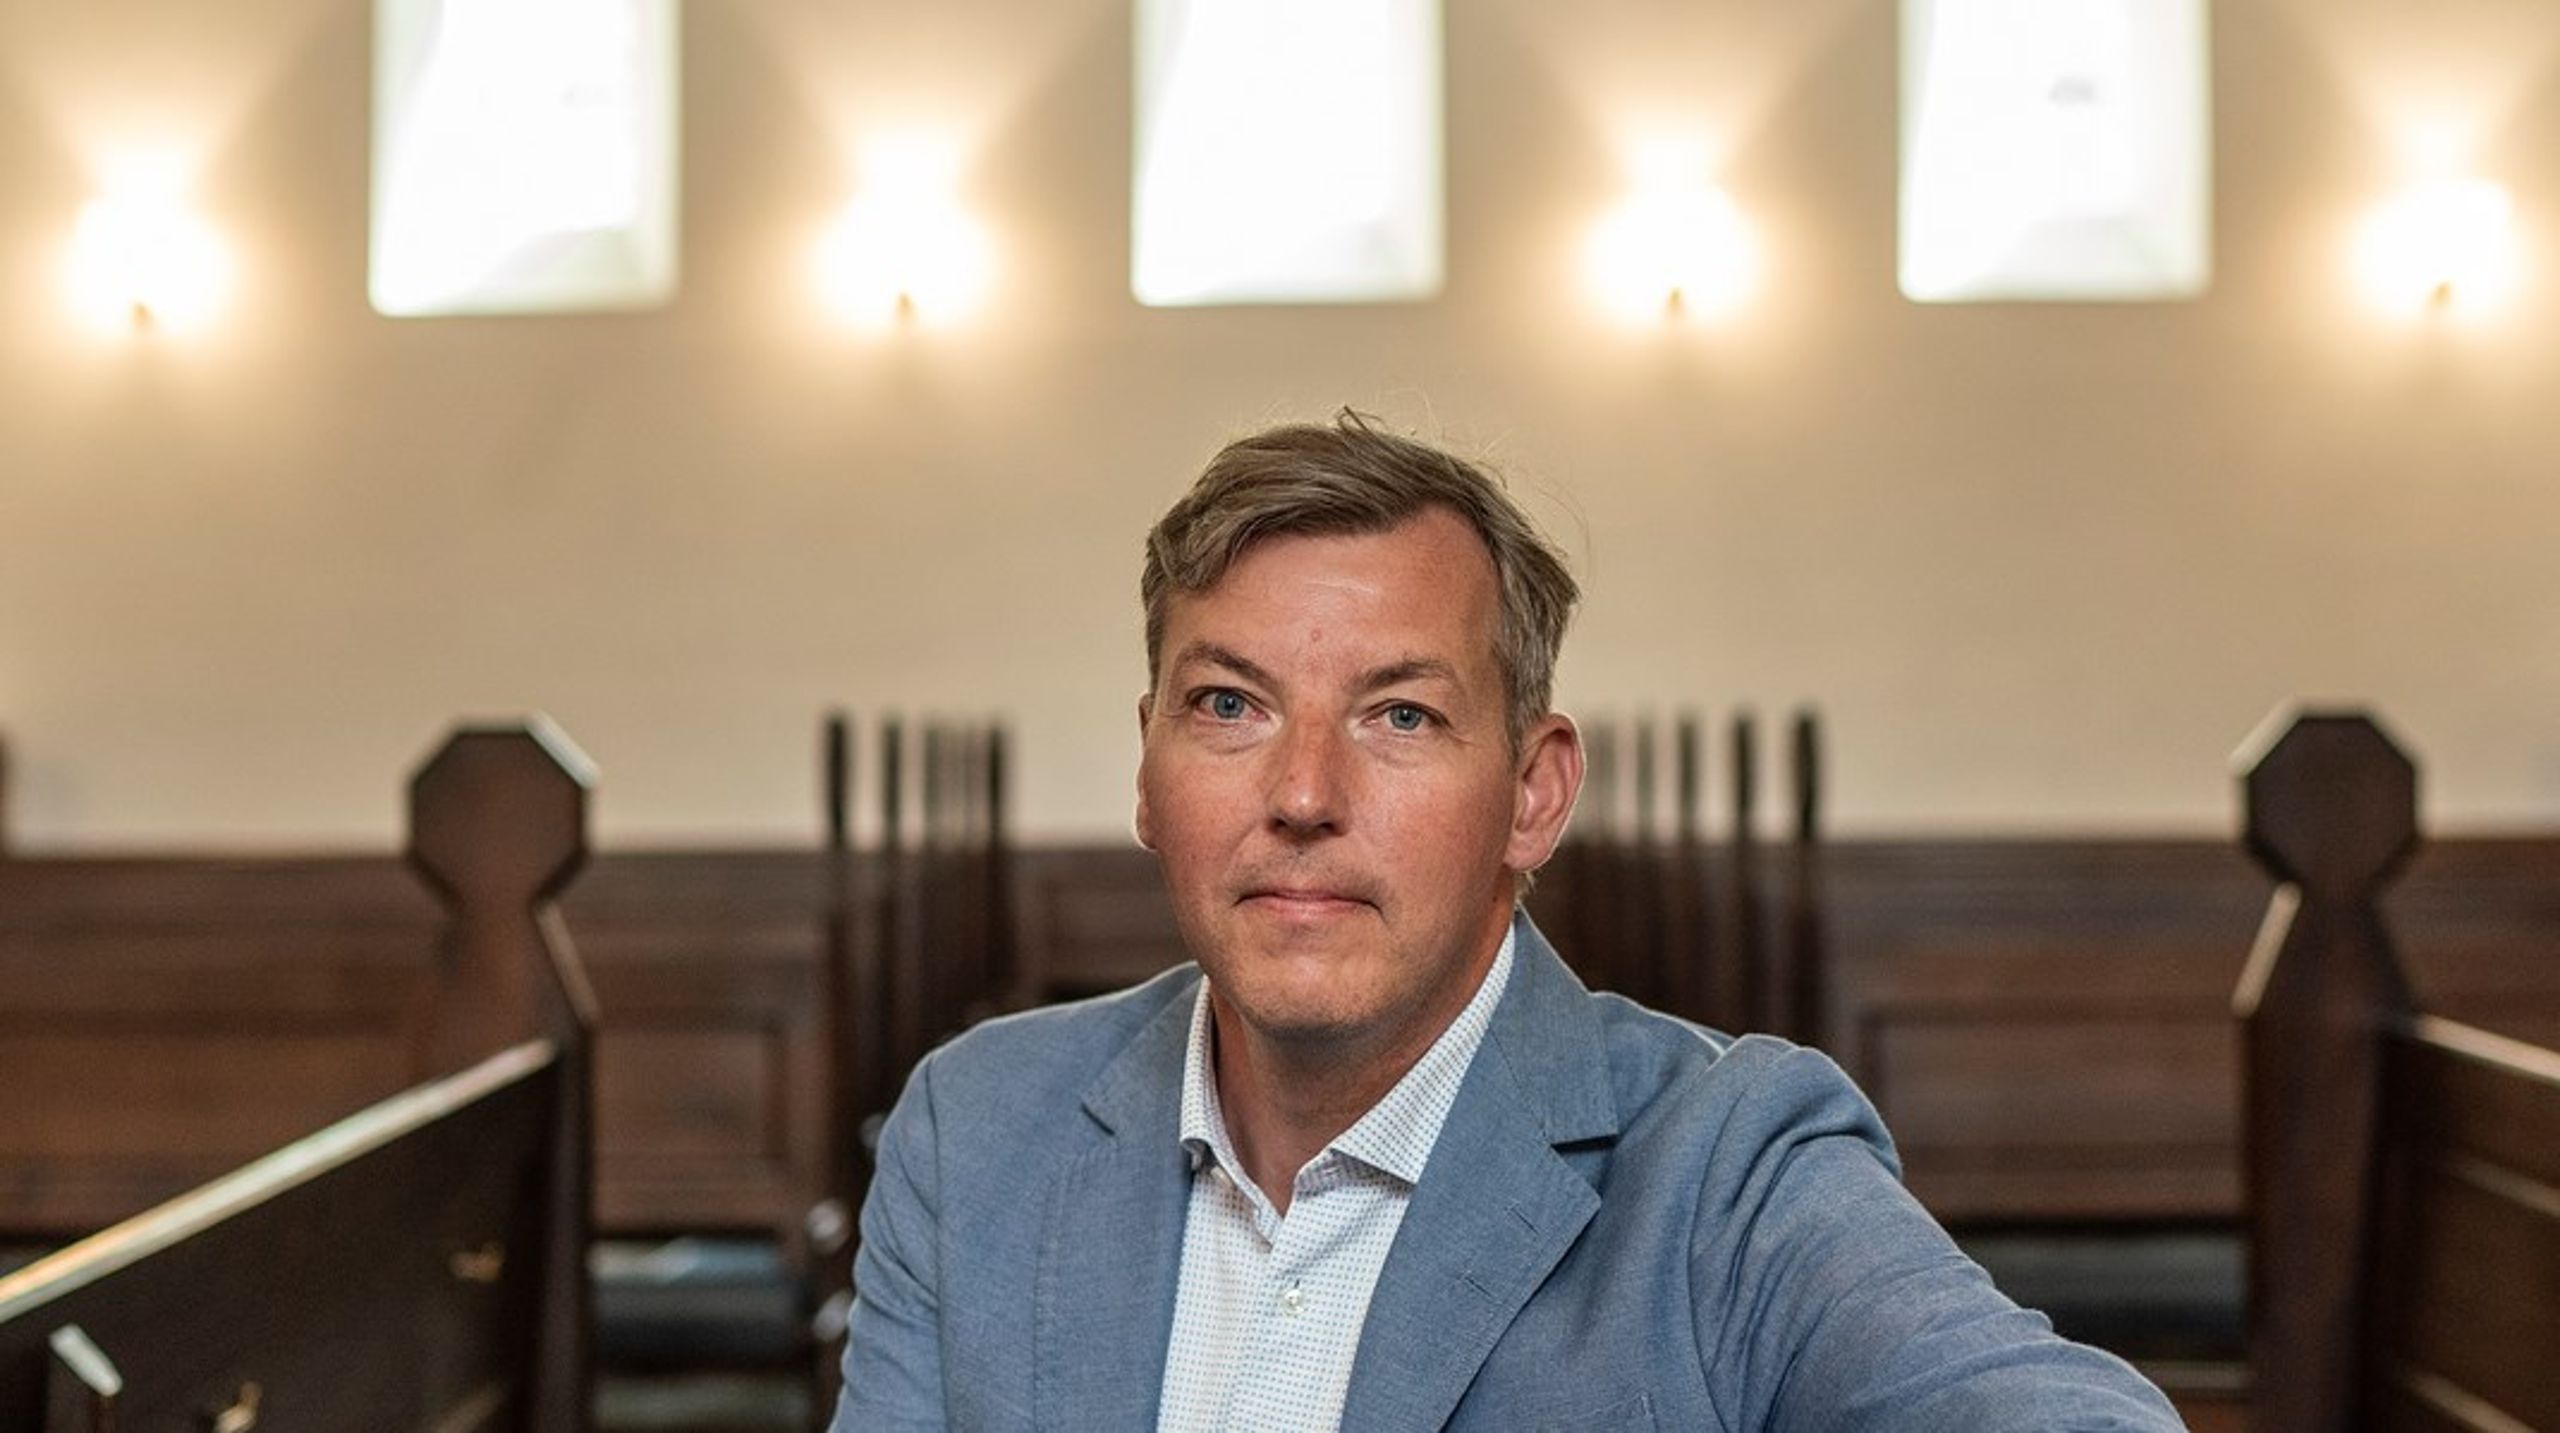 Morten Bangsgaard var medlem af Etisk Råd fra januar 2017 til januar 2023. Etisk Råds opgave er at rådgive Folketinget og andre myndigheder samt at skabe debat.